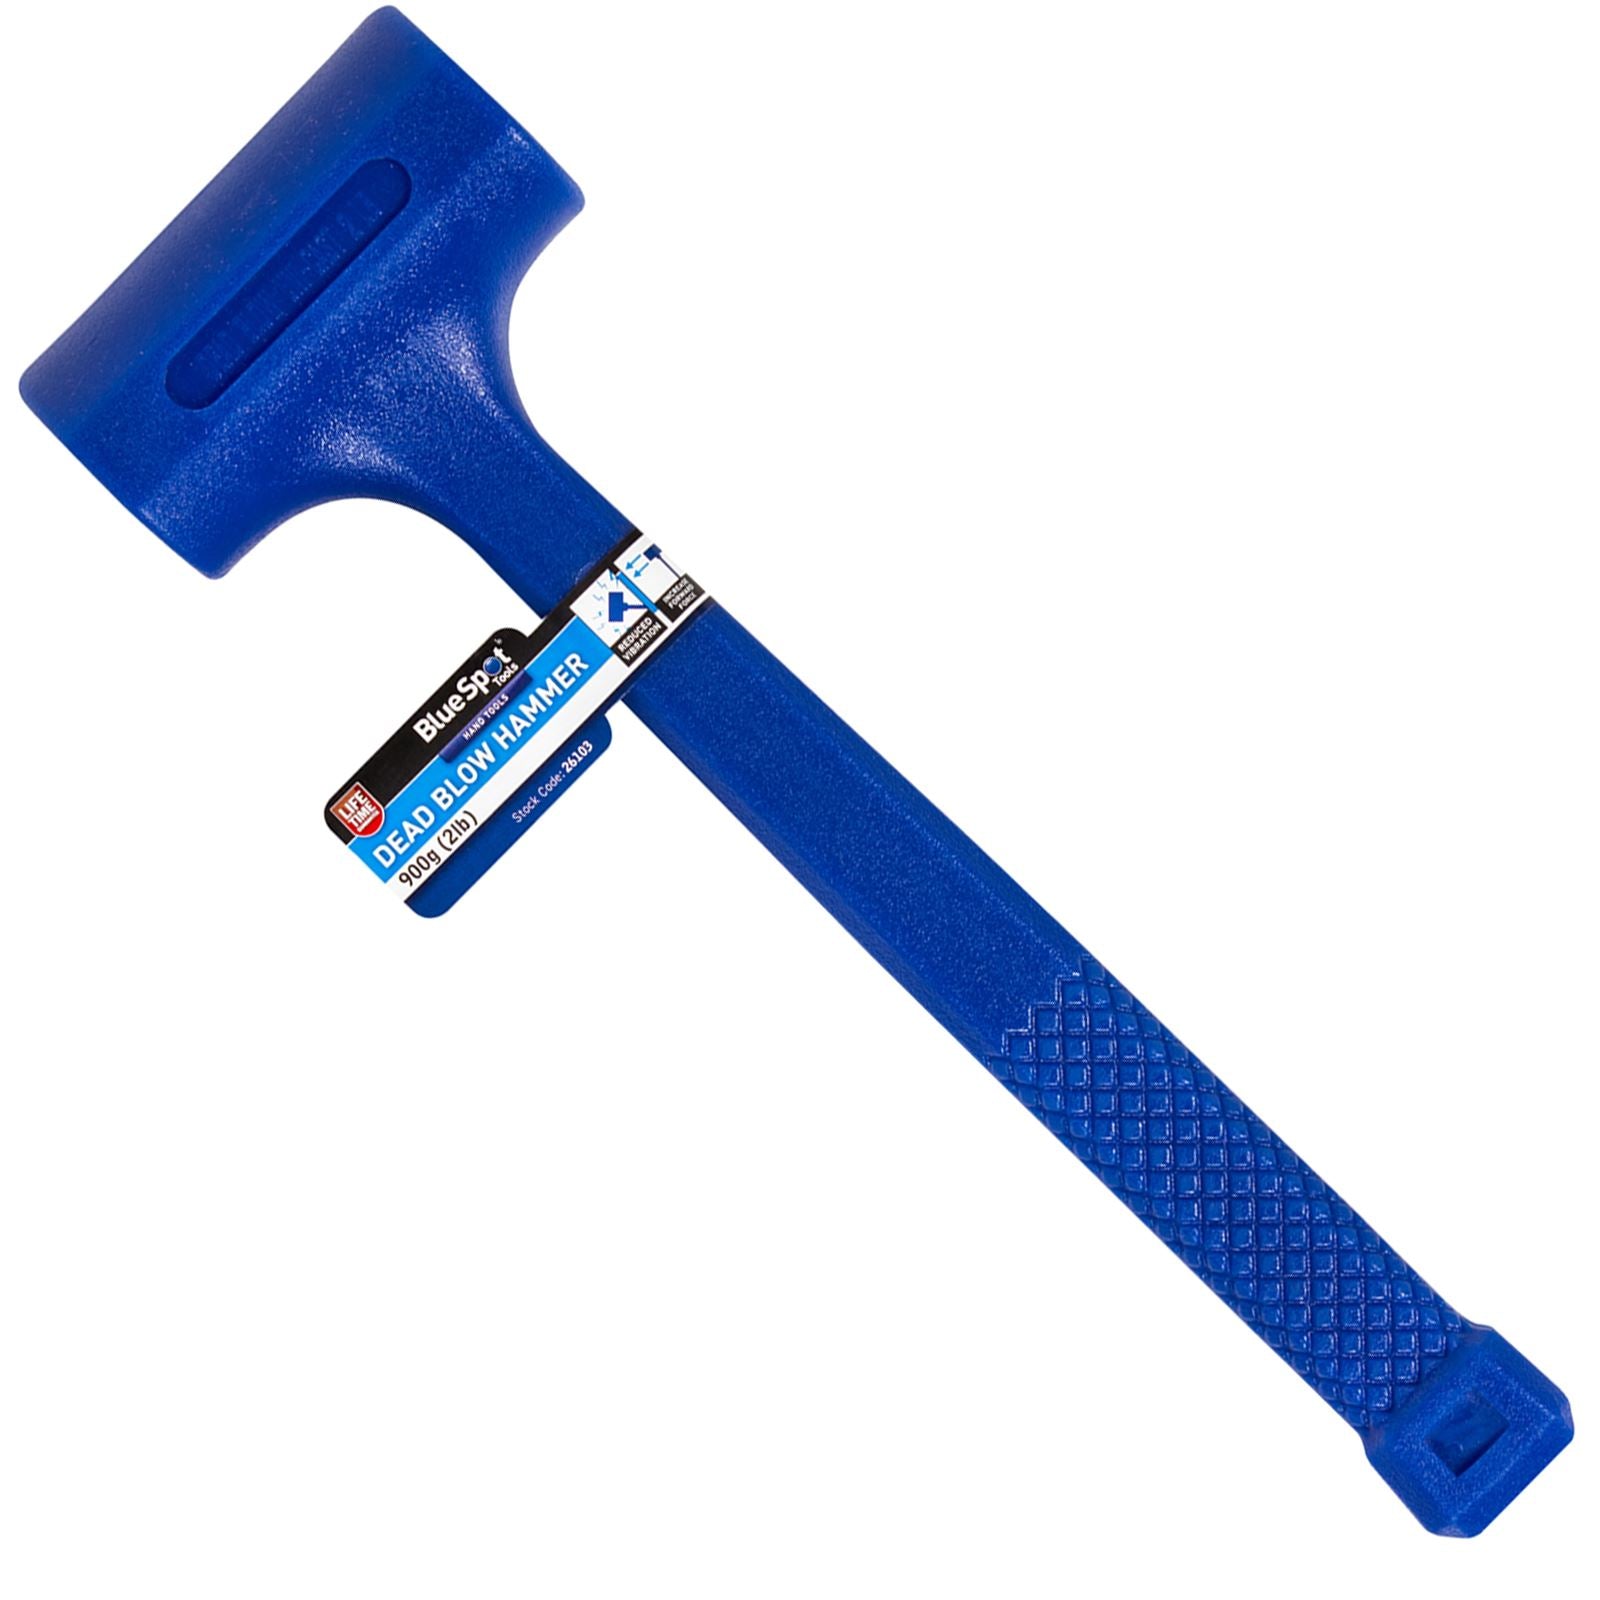 BlueSpot Dead Blow Hammer 900g